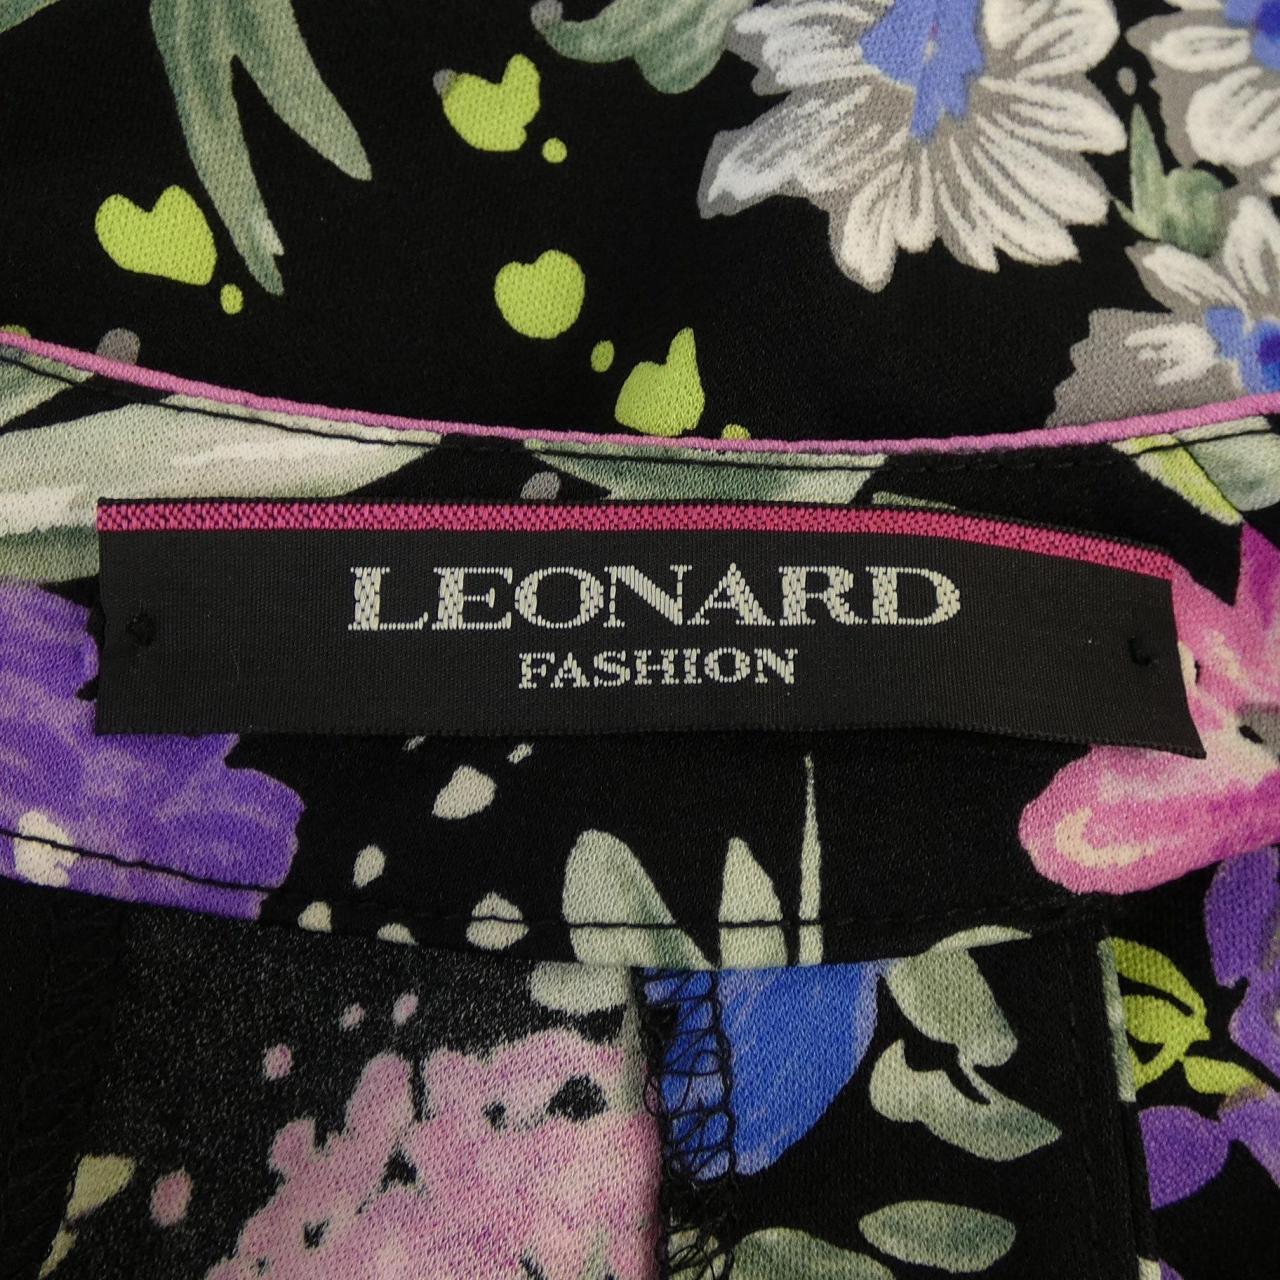 Leonard fashion LEONARD FASHION dress